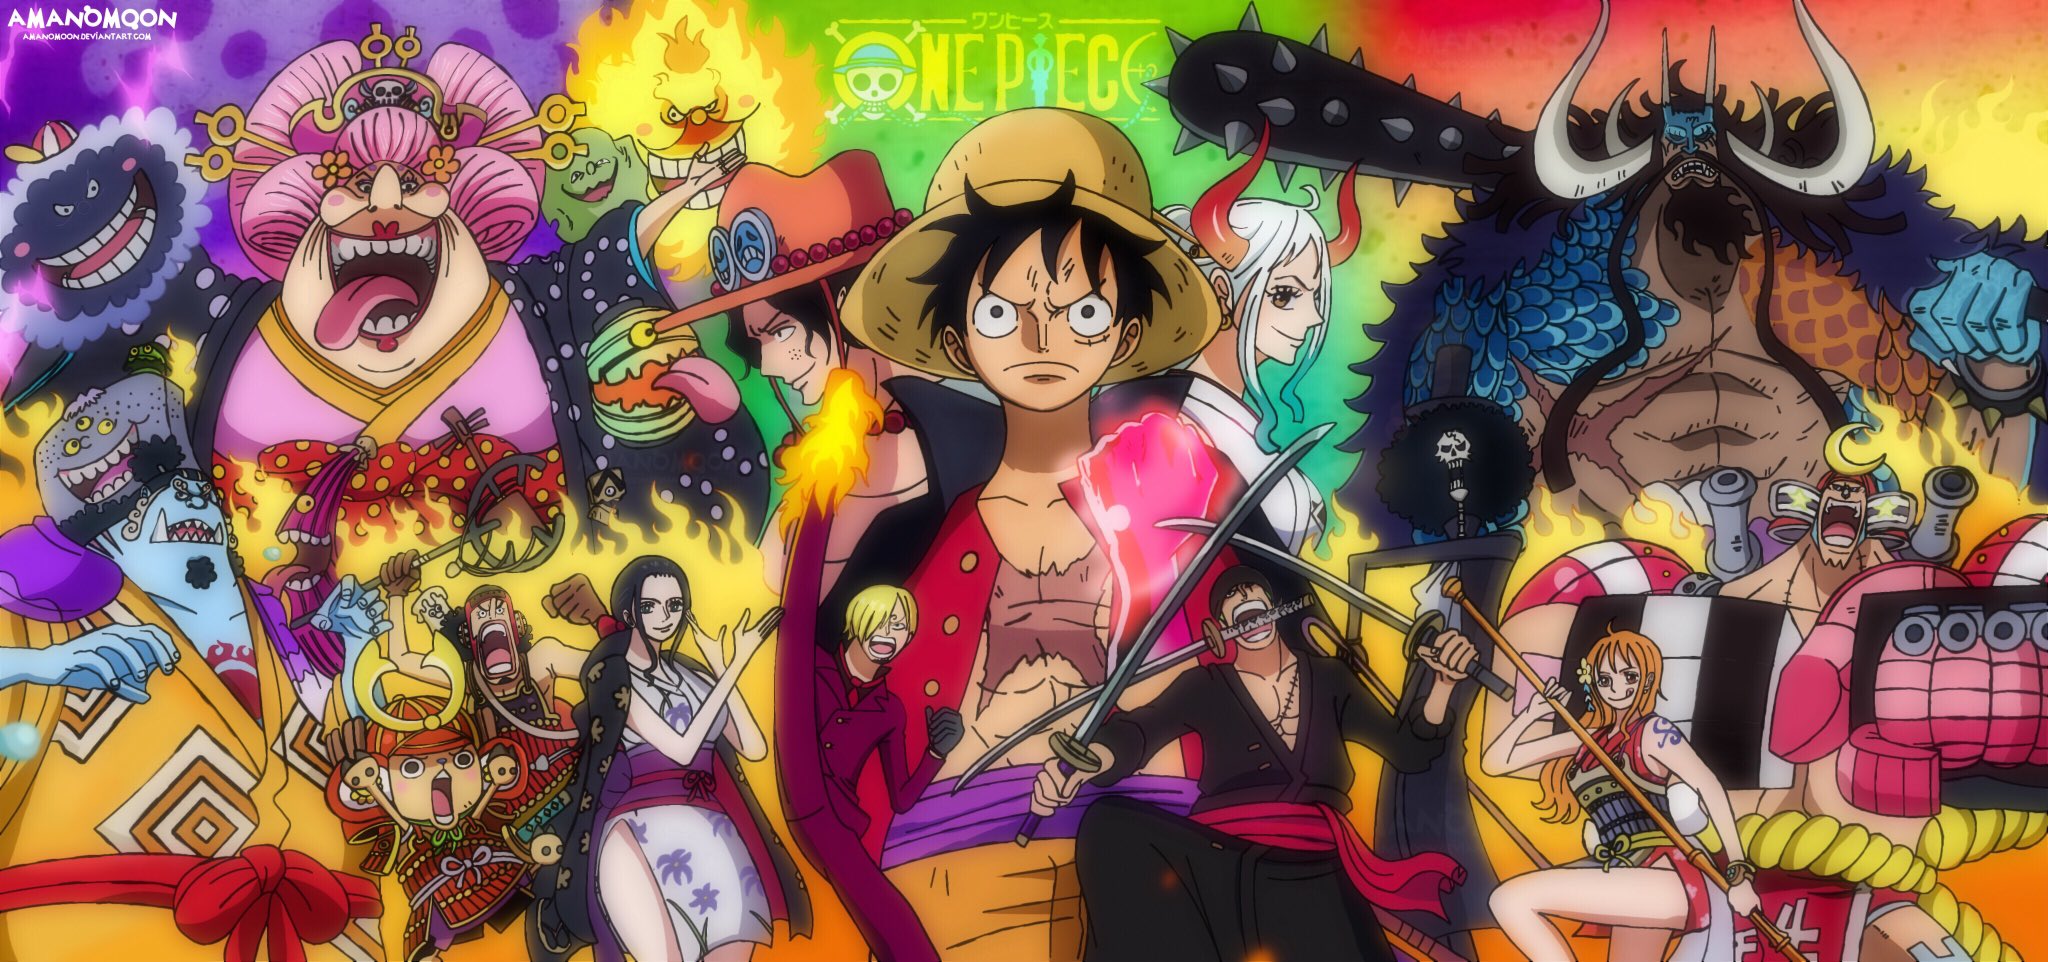 Bìa tập 100 One Piece sẽ là món quà vô cùng ý nghĩa dành cho các fan hâm mộ của bộ truyện tranh này. Với thiết kế đặc biệt, tinh tế và phong phú, bìa tập 100 One Piece là biểu tượng vĩnh cửu cho sự lớn mạnh của One Piece và sự kết nối giữa các fan trên khắp thế giới.